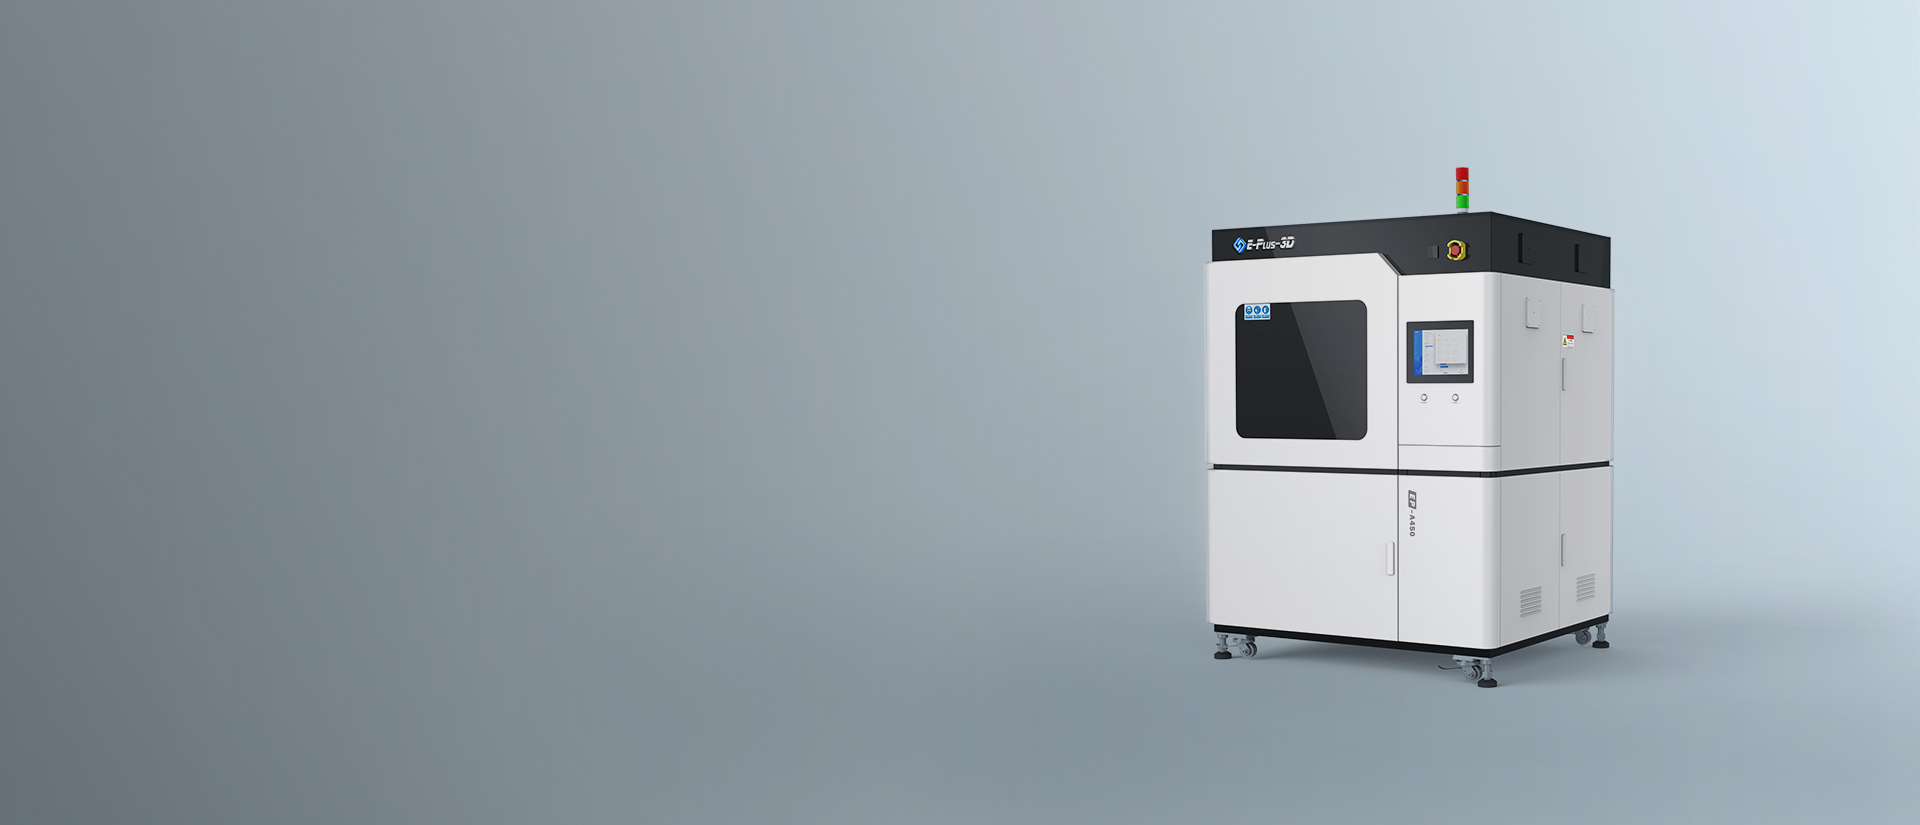 EP-A450 Resin 3D Printer